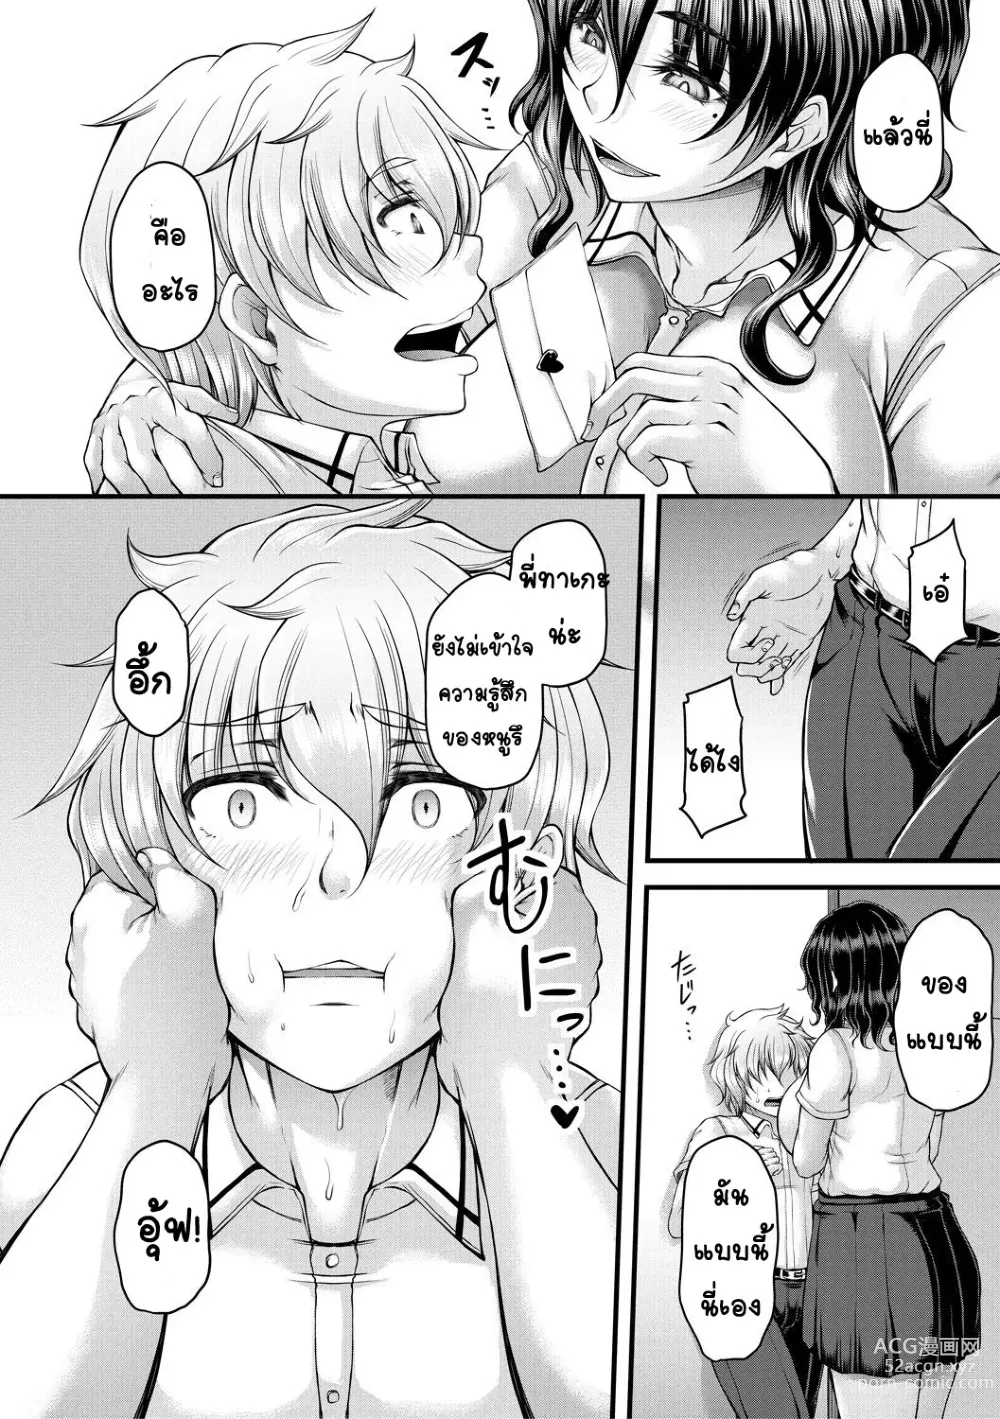 Page 12 of manga kakitsubata Kanae yoru onna ryushi wa han me rarenai 1